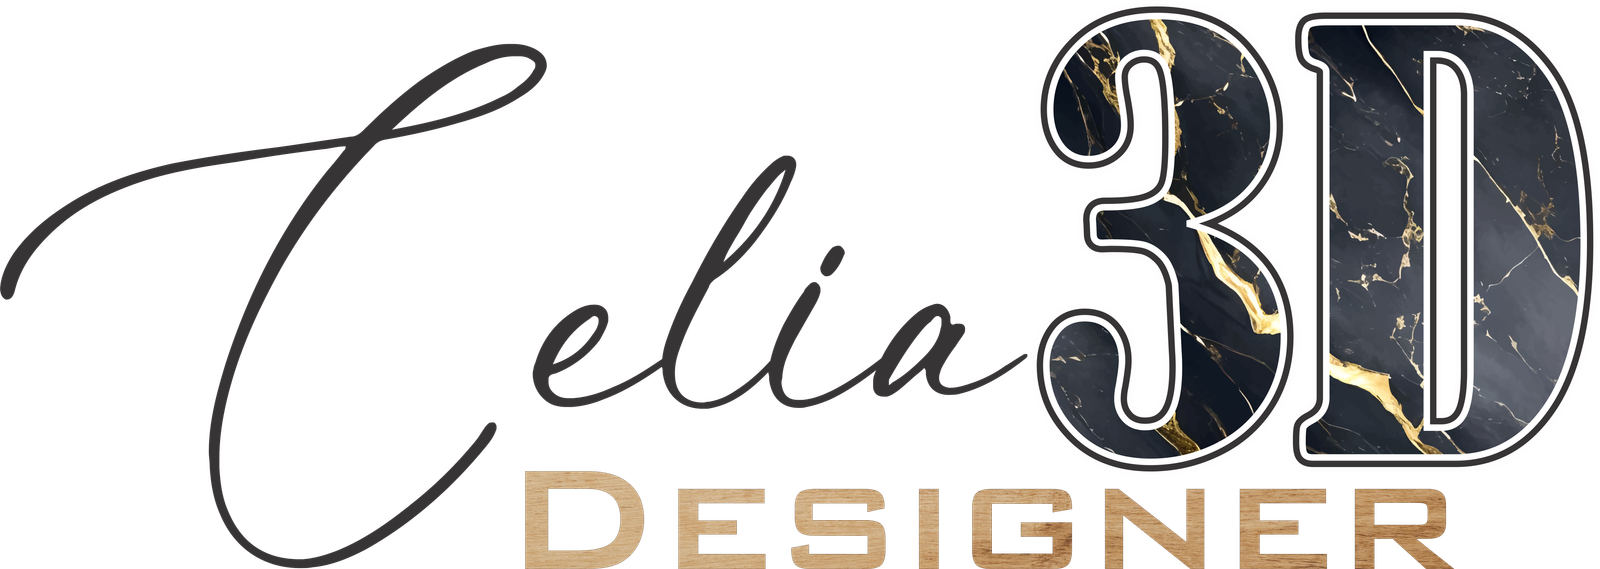 Celia 3D Designer